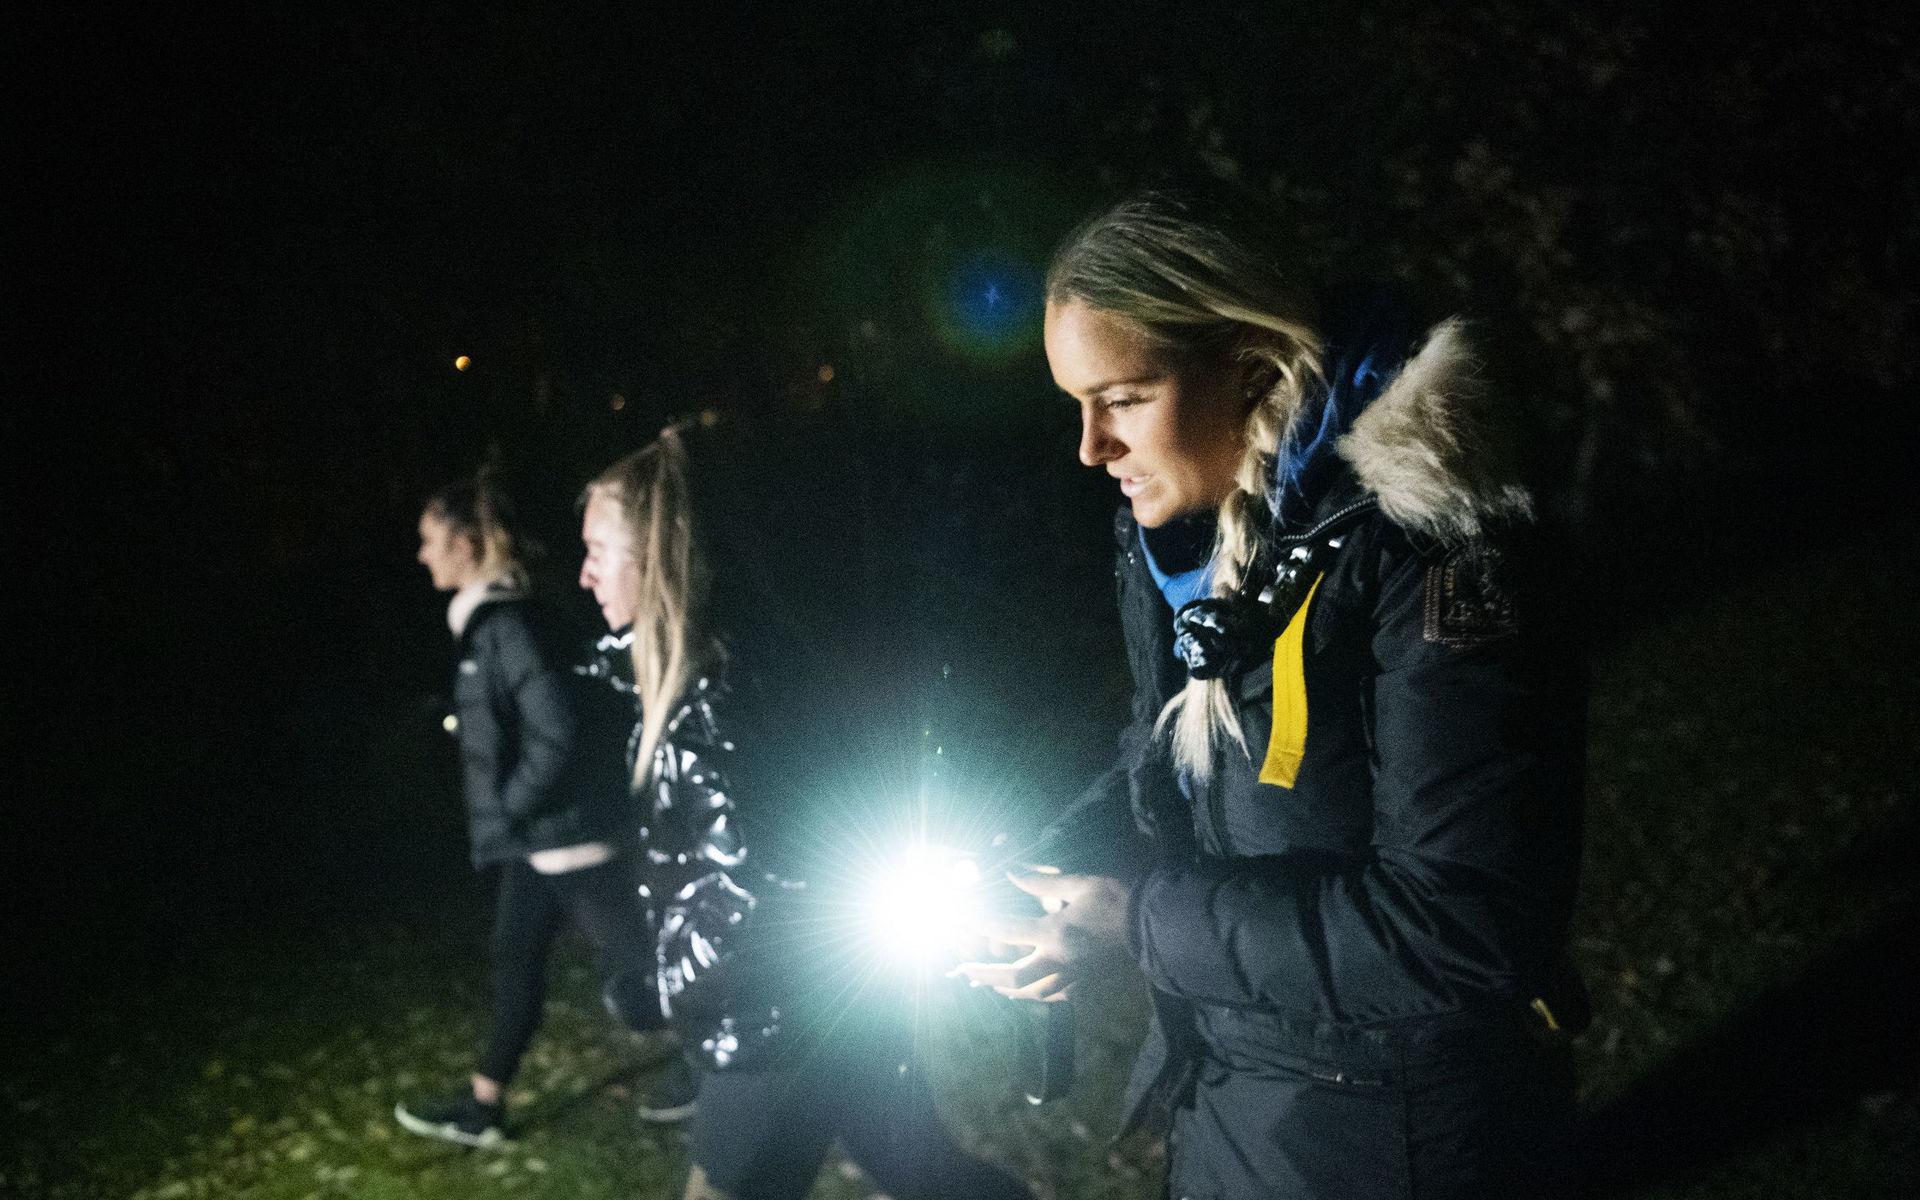 Olivia Ahlqvist (närmast kameran), Emilia Enhamn och Felicia Enhamn hjälper också till i sökandet efter pojken.